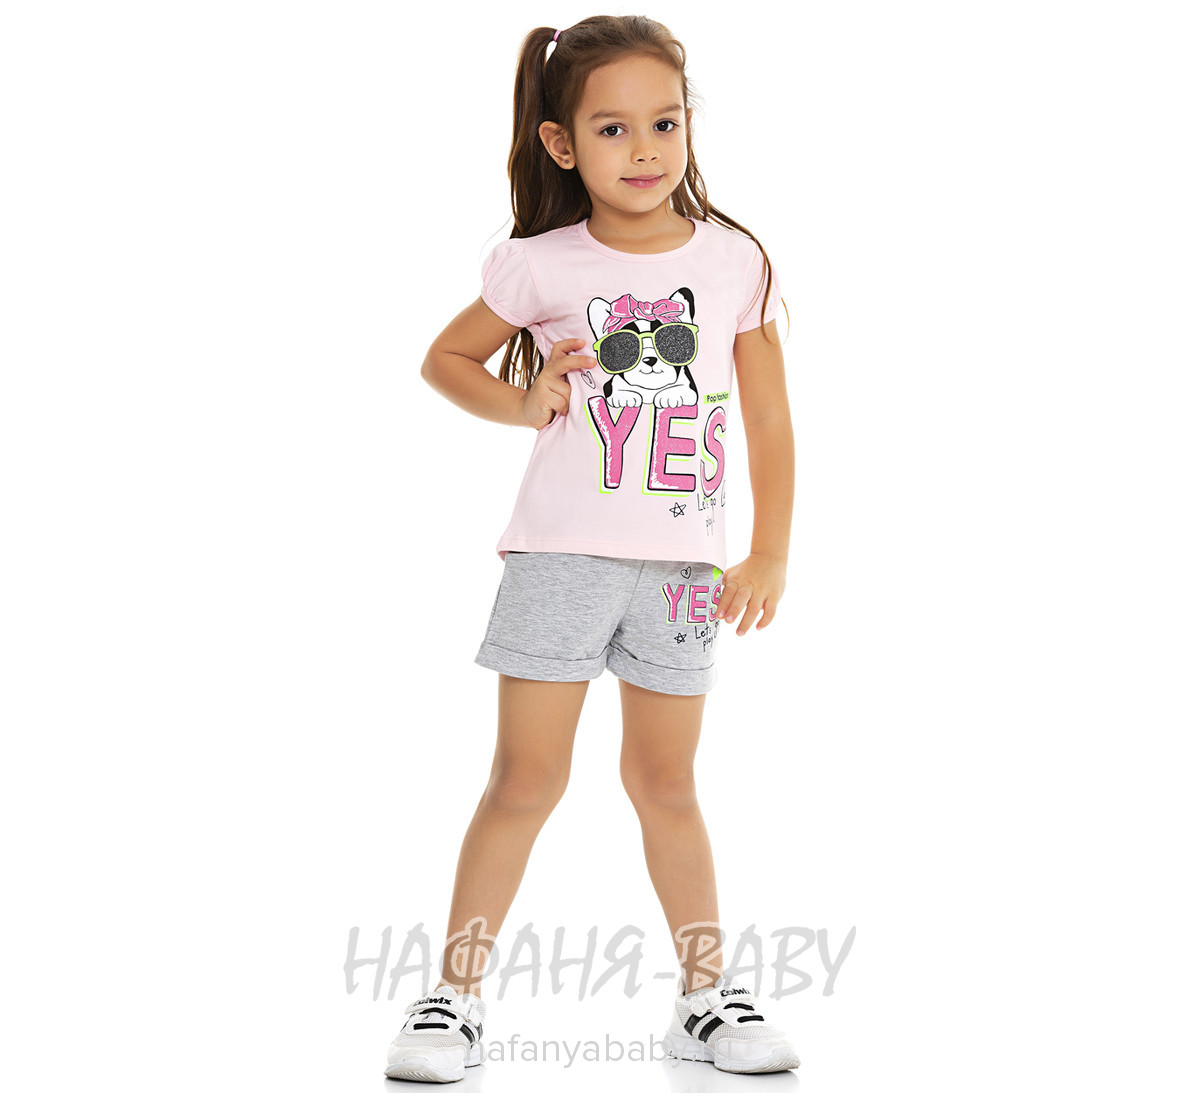 Костюм (футболка + шорты)  PF арт: 6558, 1-4 года, 5-9 лет, цвет розовый, оптом Турция